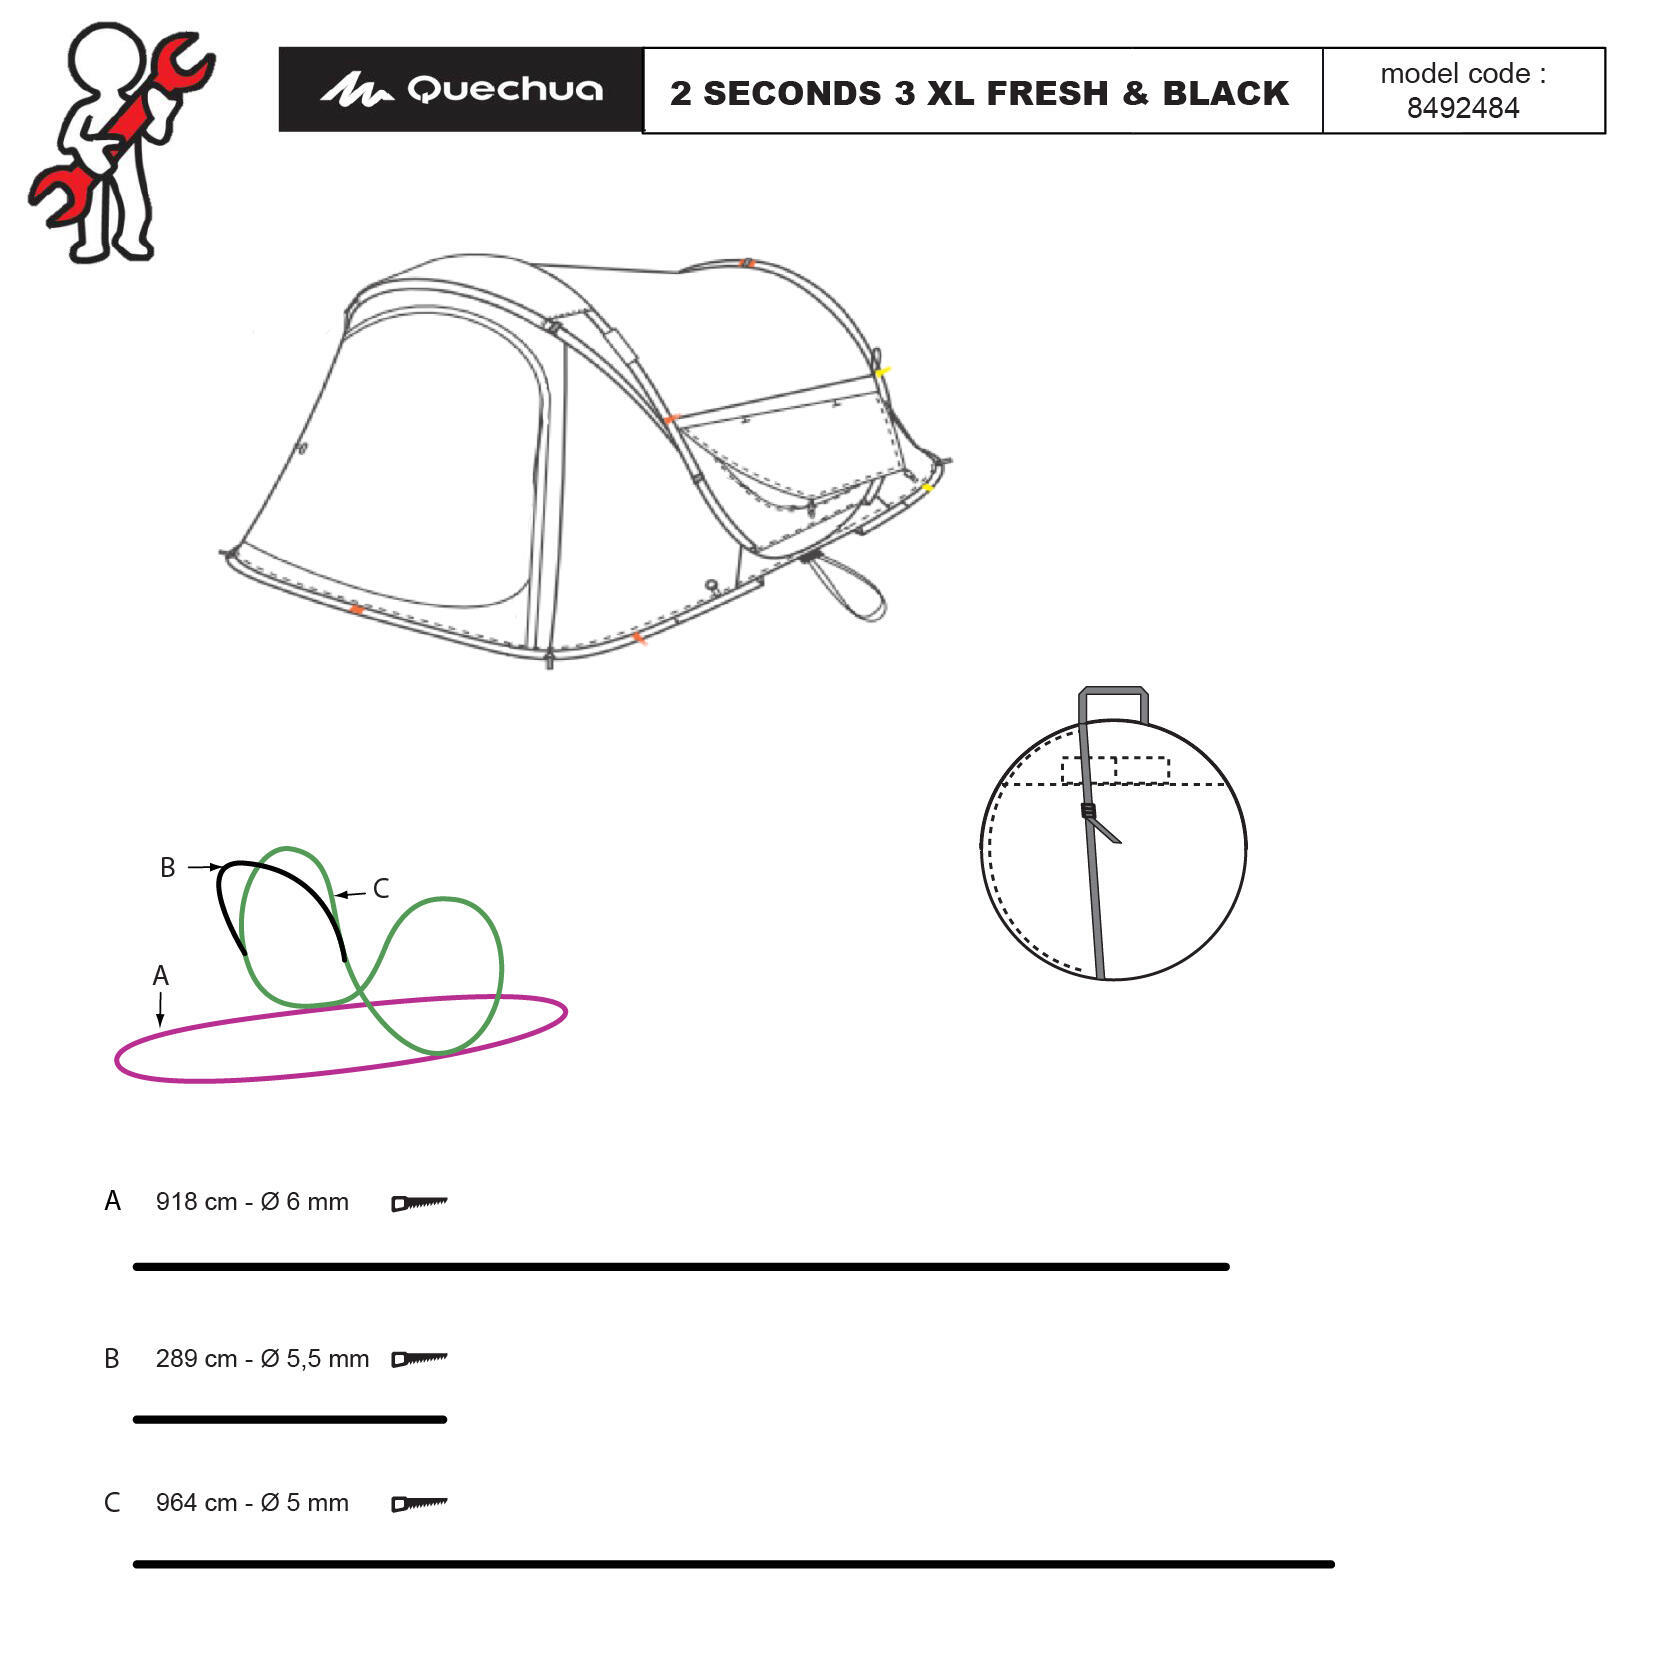 herstellen-2-seconds-tent-3-personen-fresh-and-black-XL-quechua-stuk